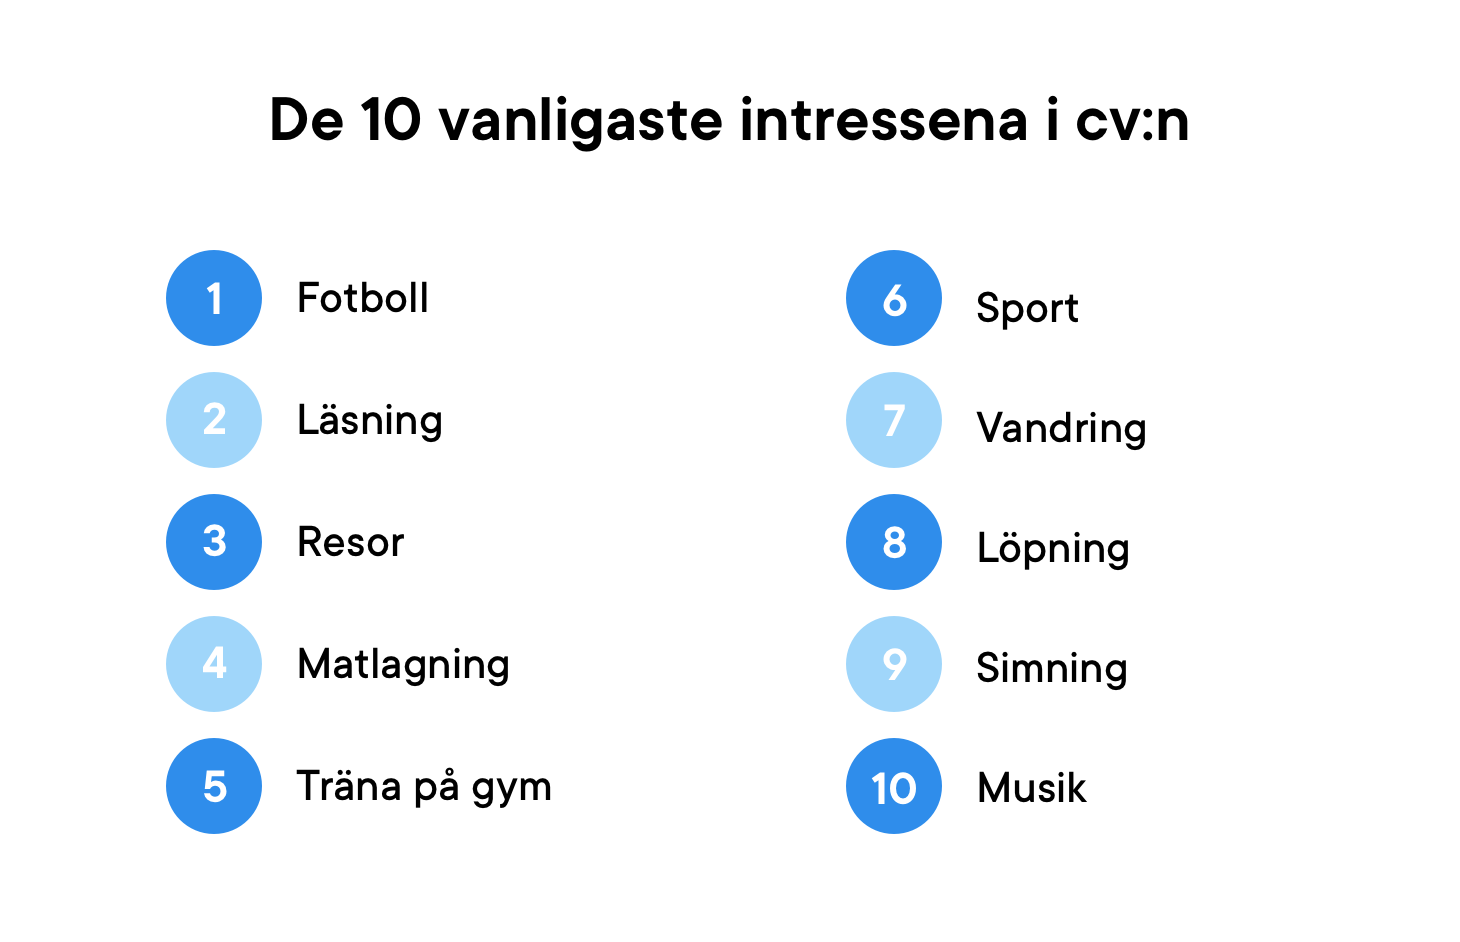 De vanligaste favorithobbyerna i svenska cv:n 